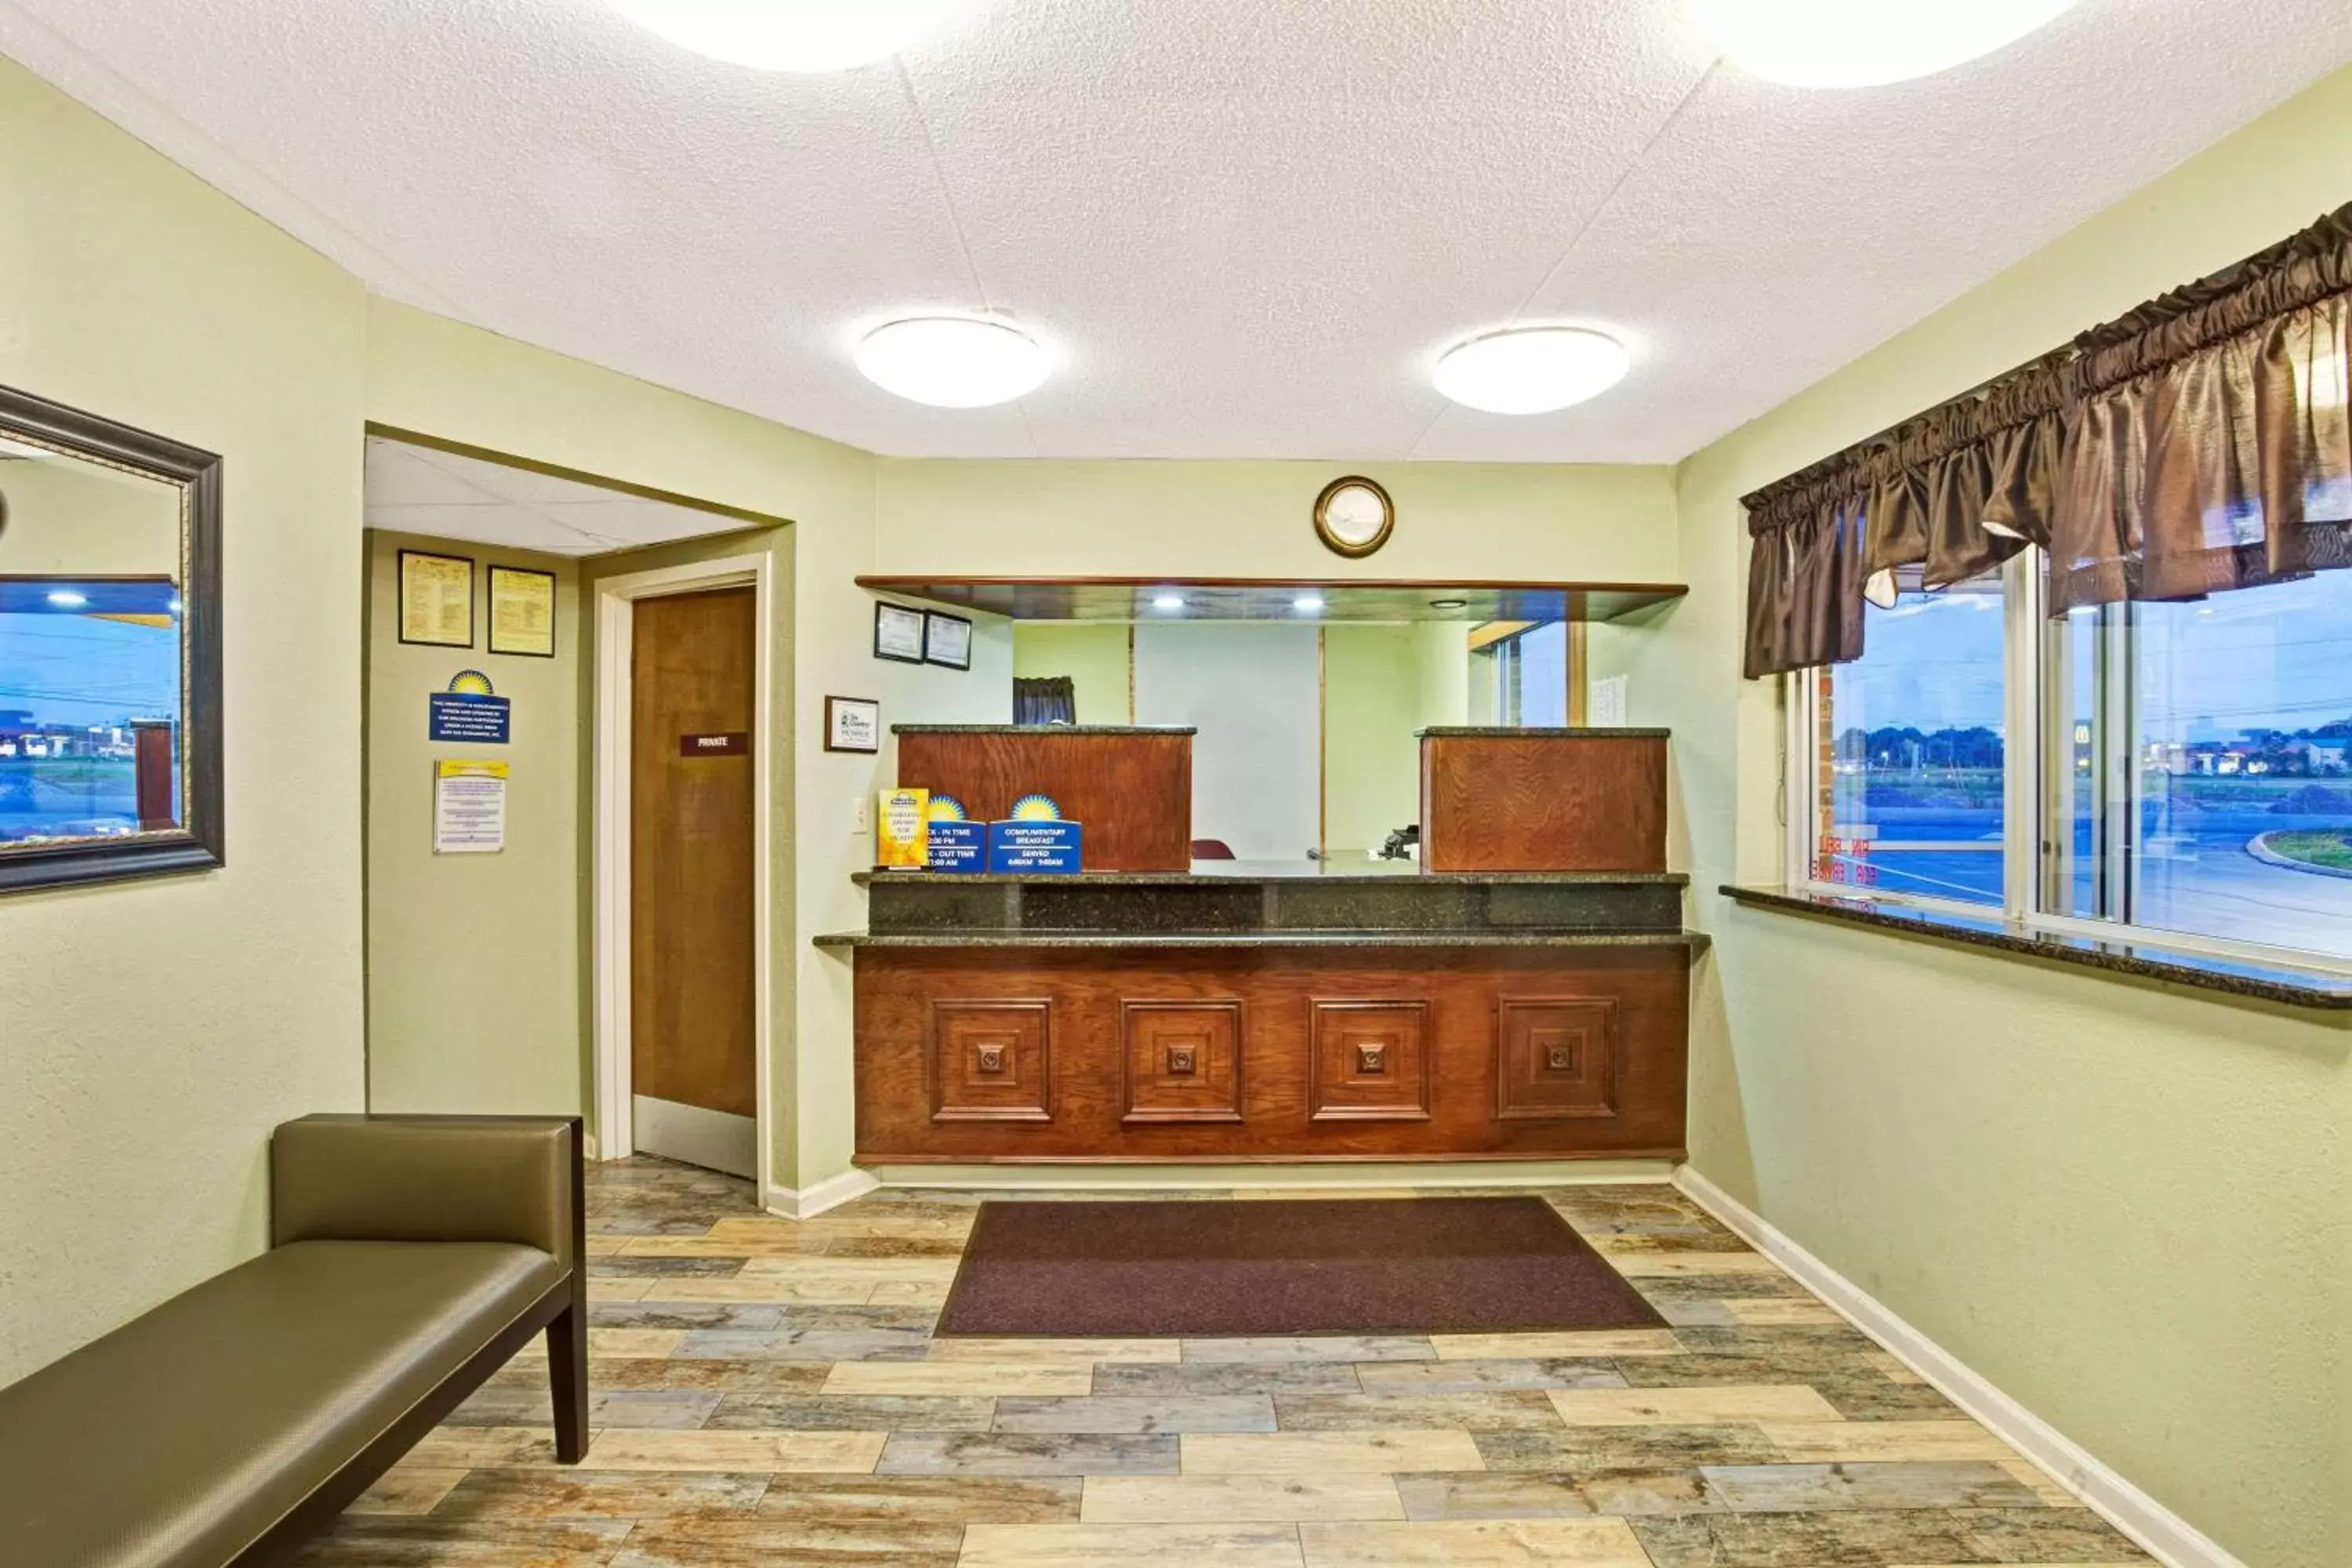 Lobby or reception, Lobby/Reception in Days Inn by Wyndham Clarksville TN